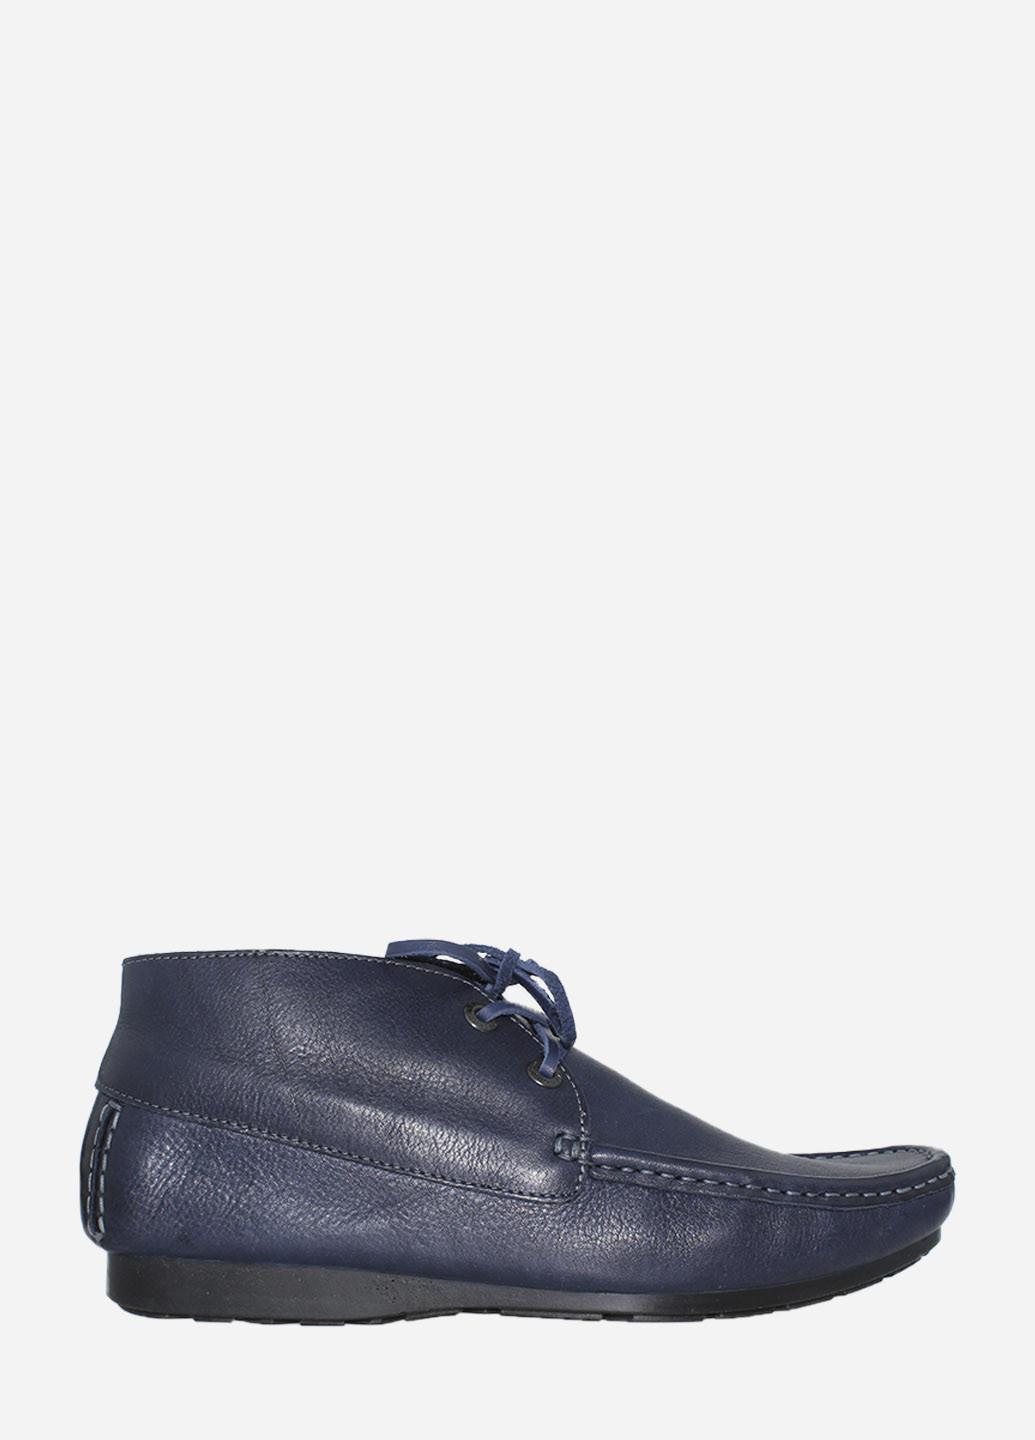 Синие осенние ботинки rt733-02-03 синий Tibet